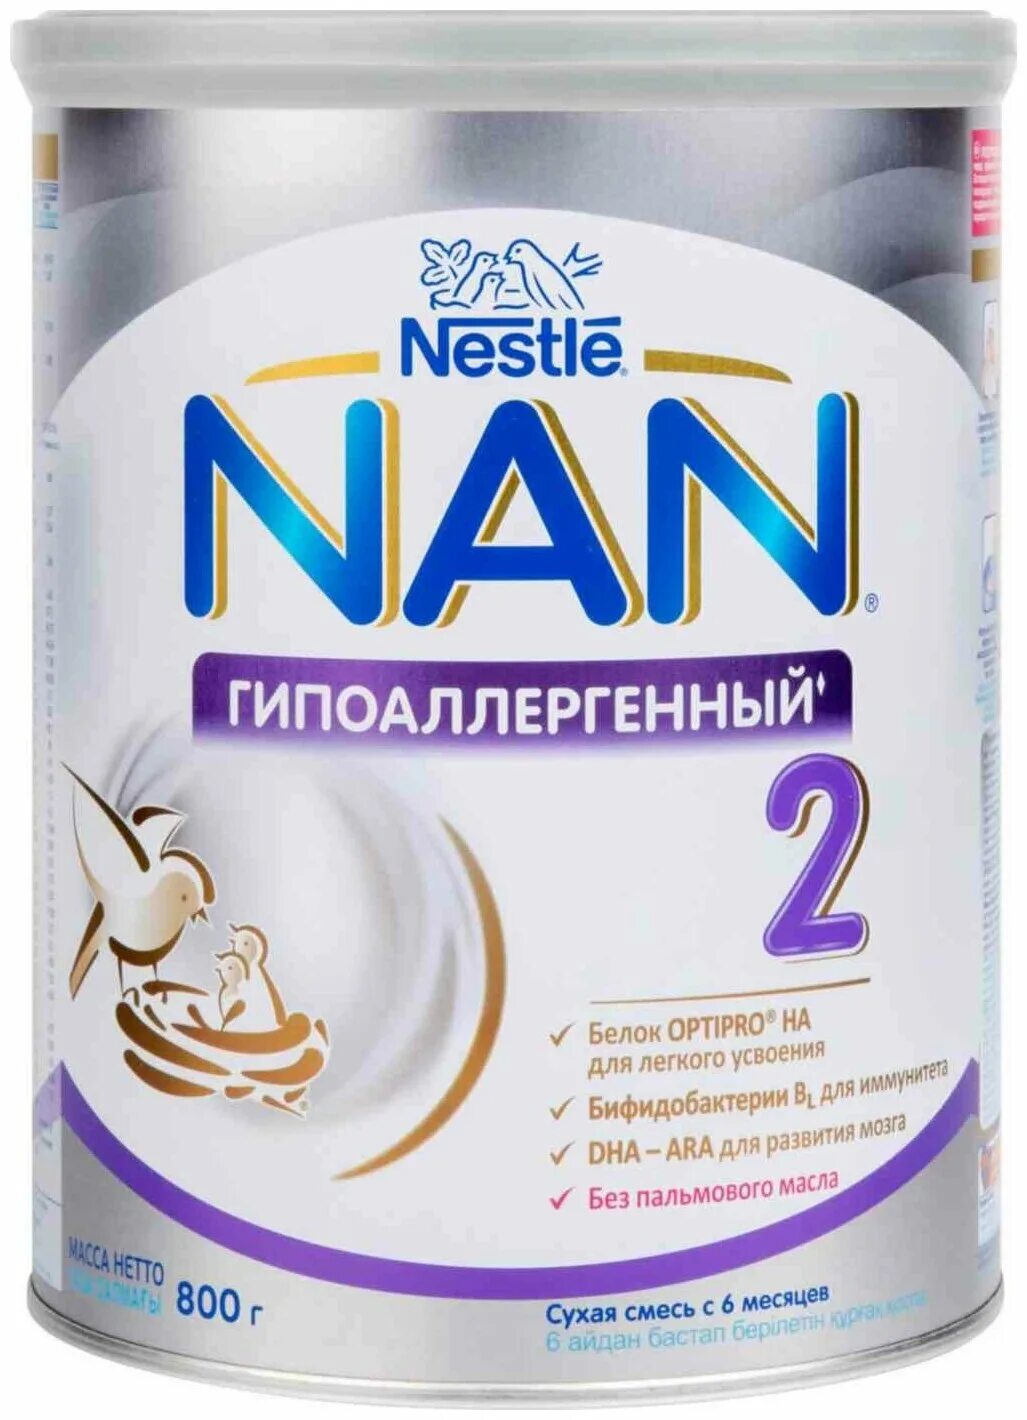 Купить смесь nan. Nan (Nestlé) 2 Optipro, с 6 месяцев, 800 г. Нестле нан 2 гипоаллергенный оптипро. Nan Nestlé 2 Optipro, с 6 месяцев. Nan 6 Optipro.